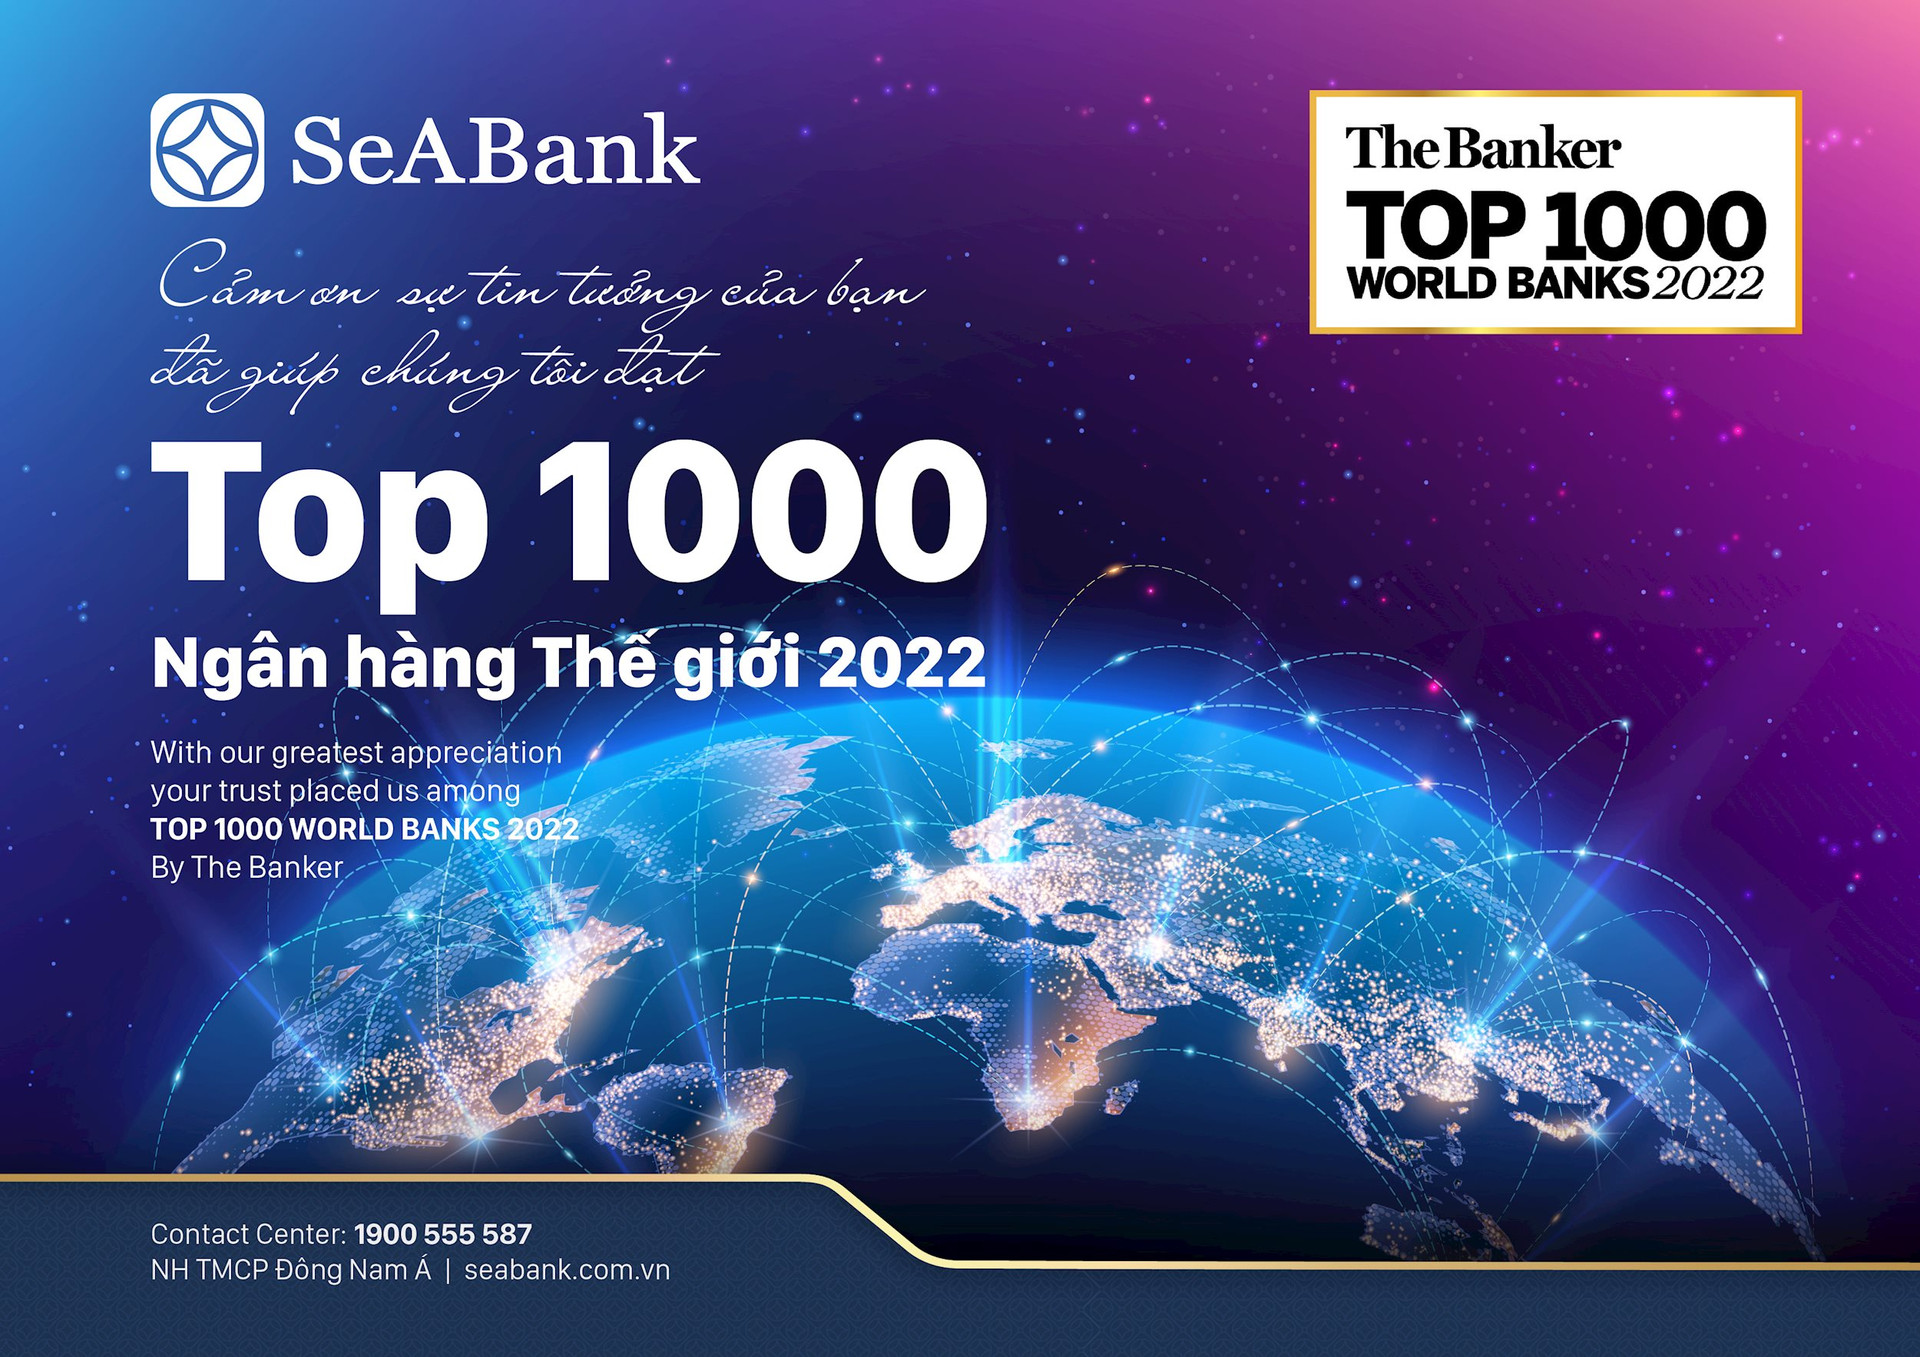 seabank-top-1000-ngan-hang-the-gioi.jpg